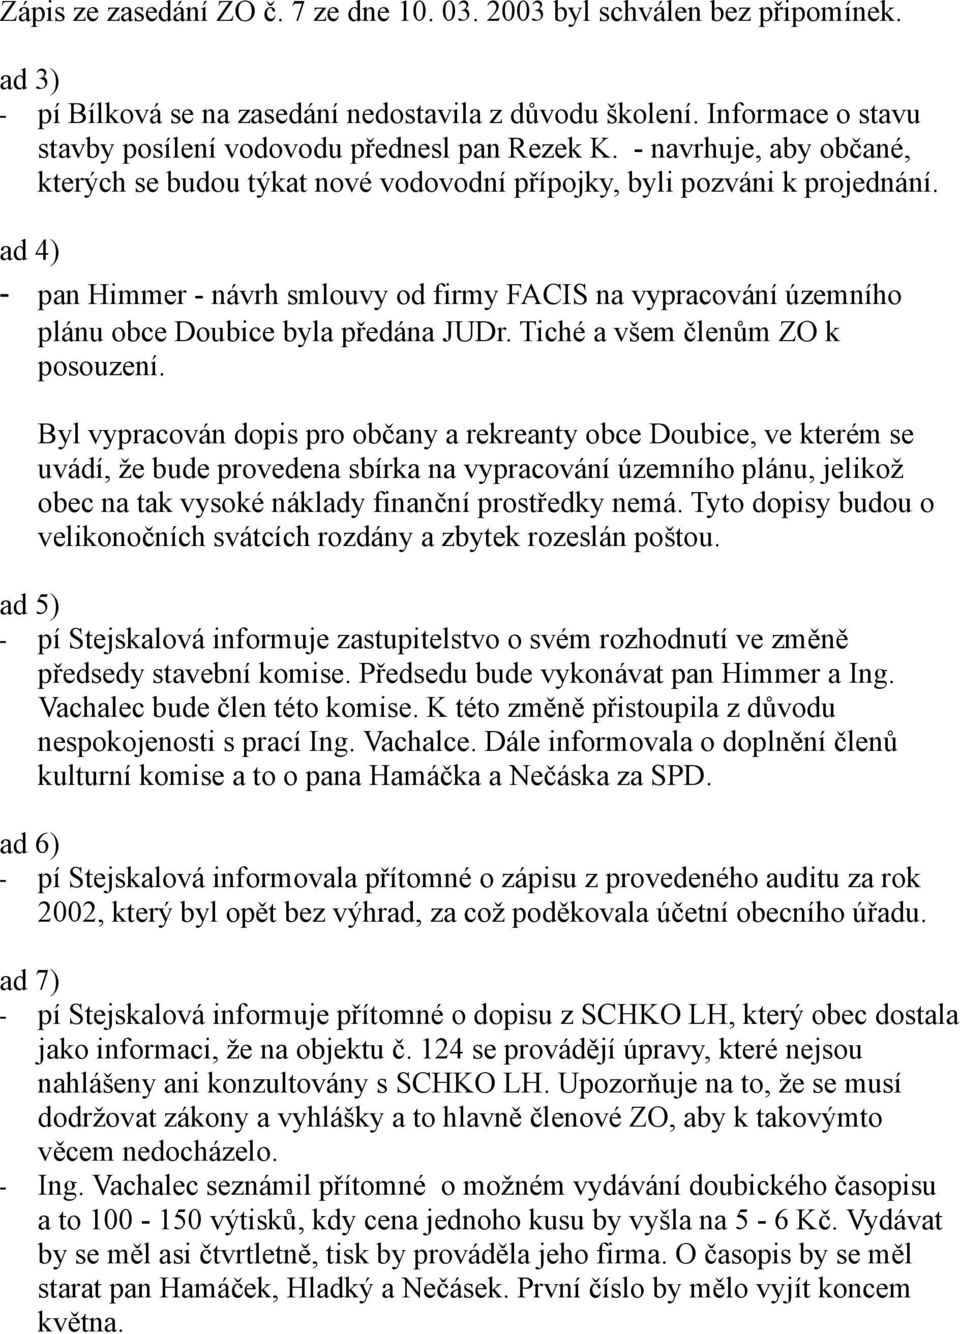 ad 4) - pan Himmer - návrh smlouvy od firmy FACIS na vypracování územního plánu obce Doubice byla předána JUDr. Tiché a všem členům ZO k posouzení.